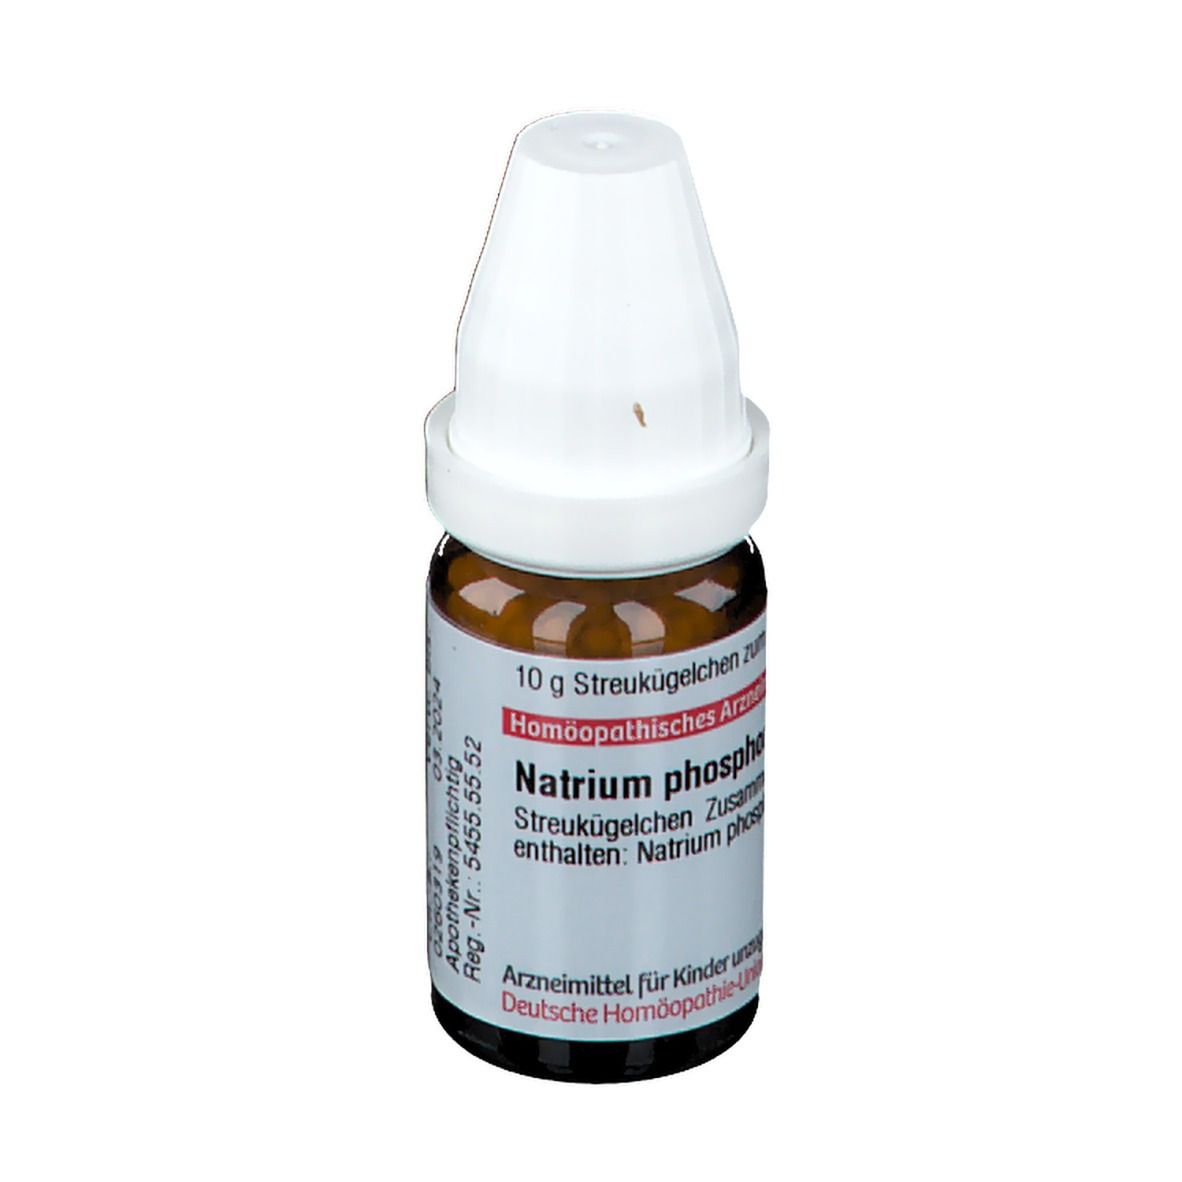 DHU Natrium Phosphoricum D12